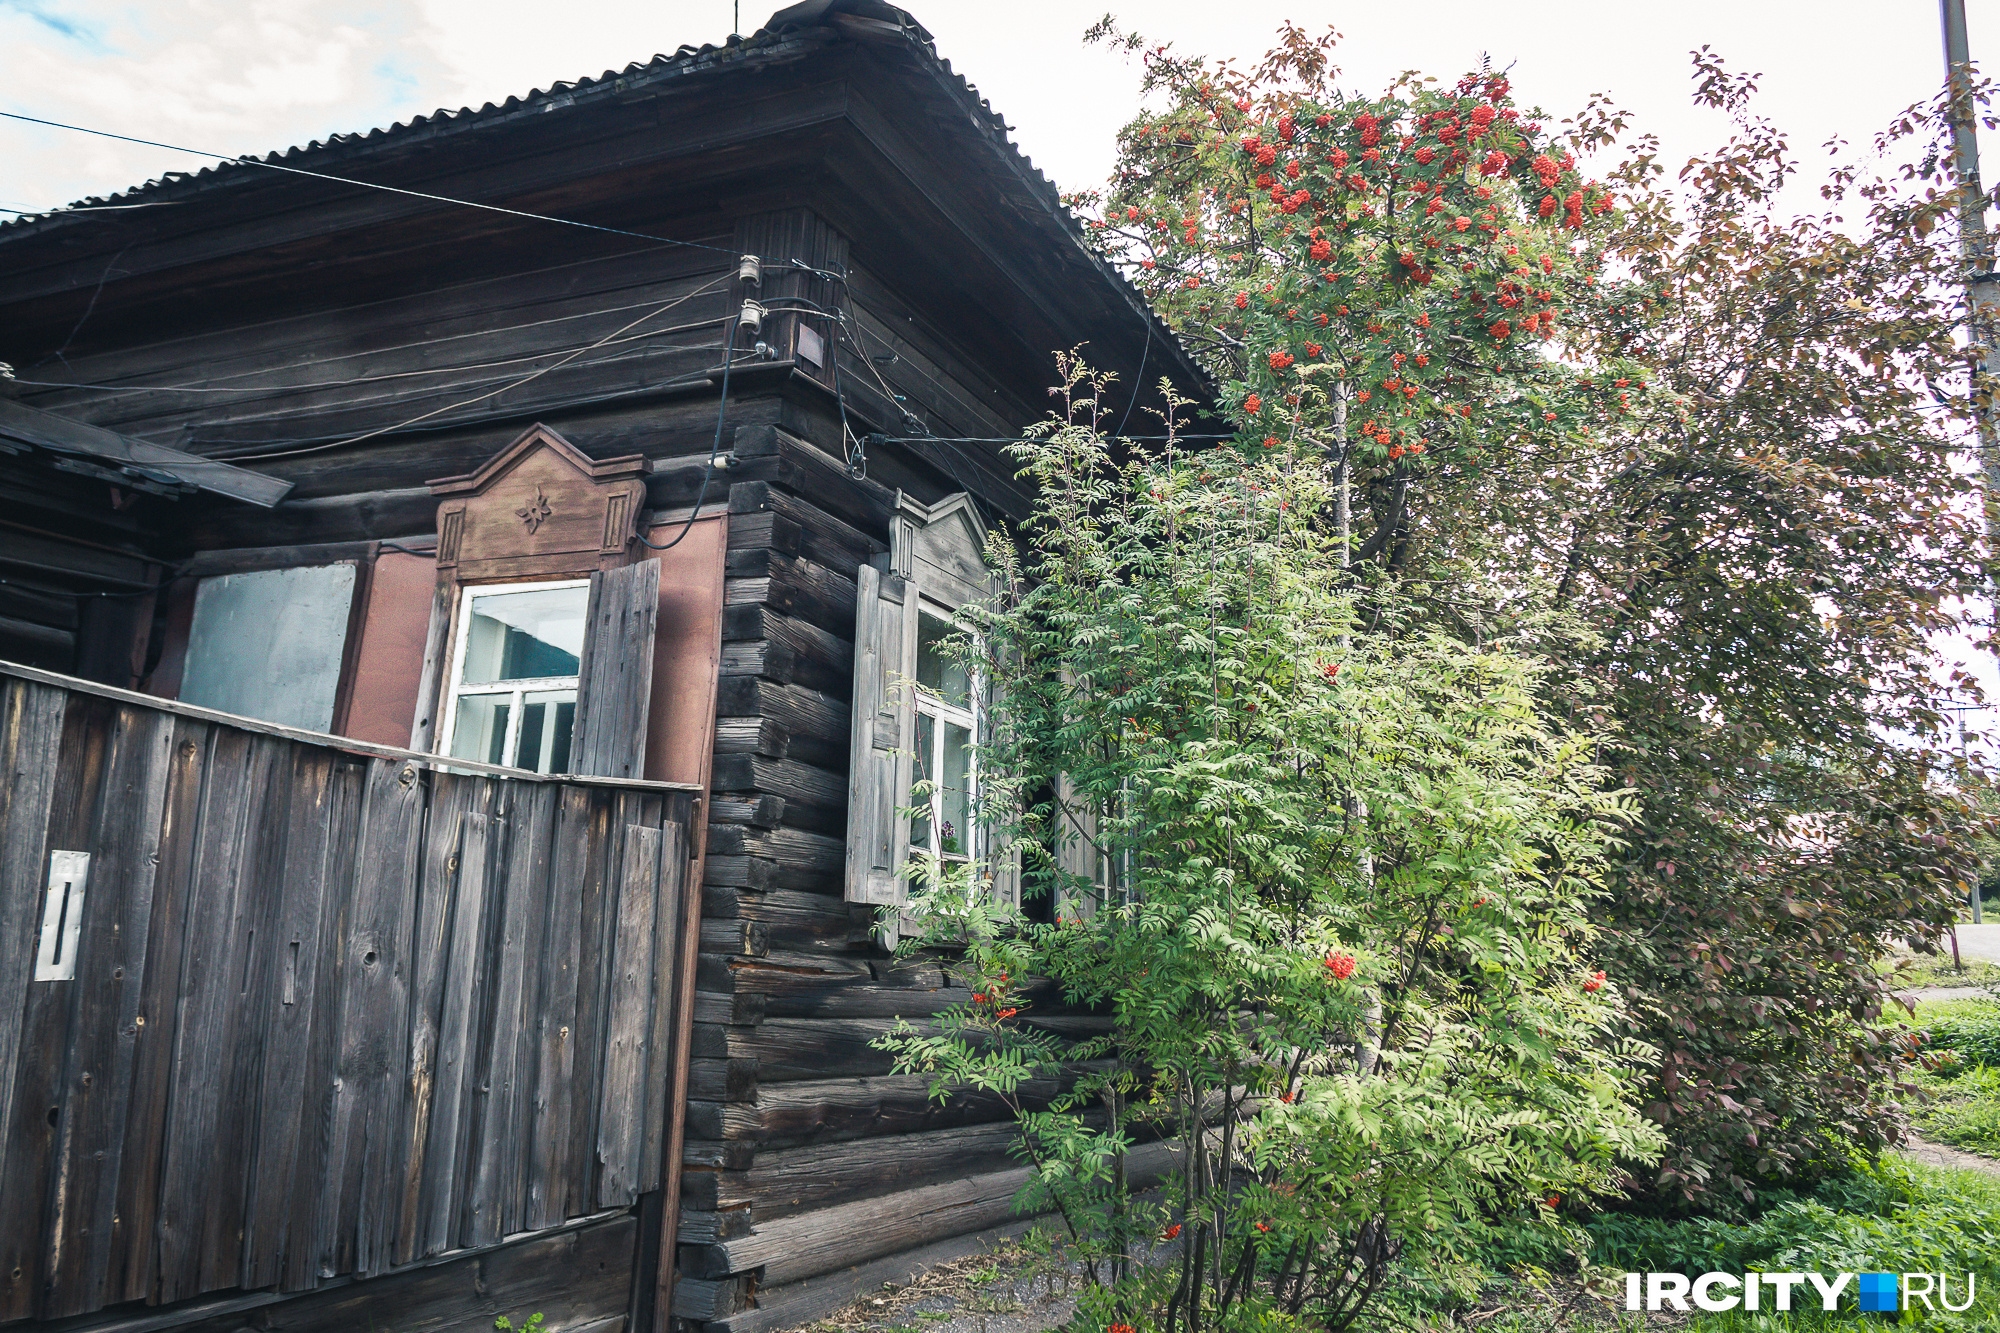 Еще один исторический дом на Госпитальной — усадьба Коротаева